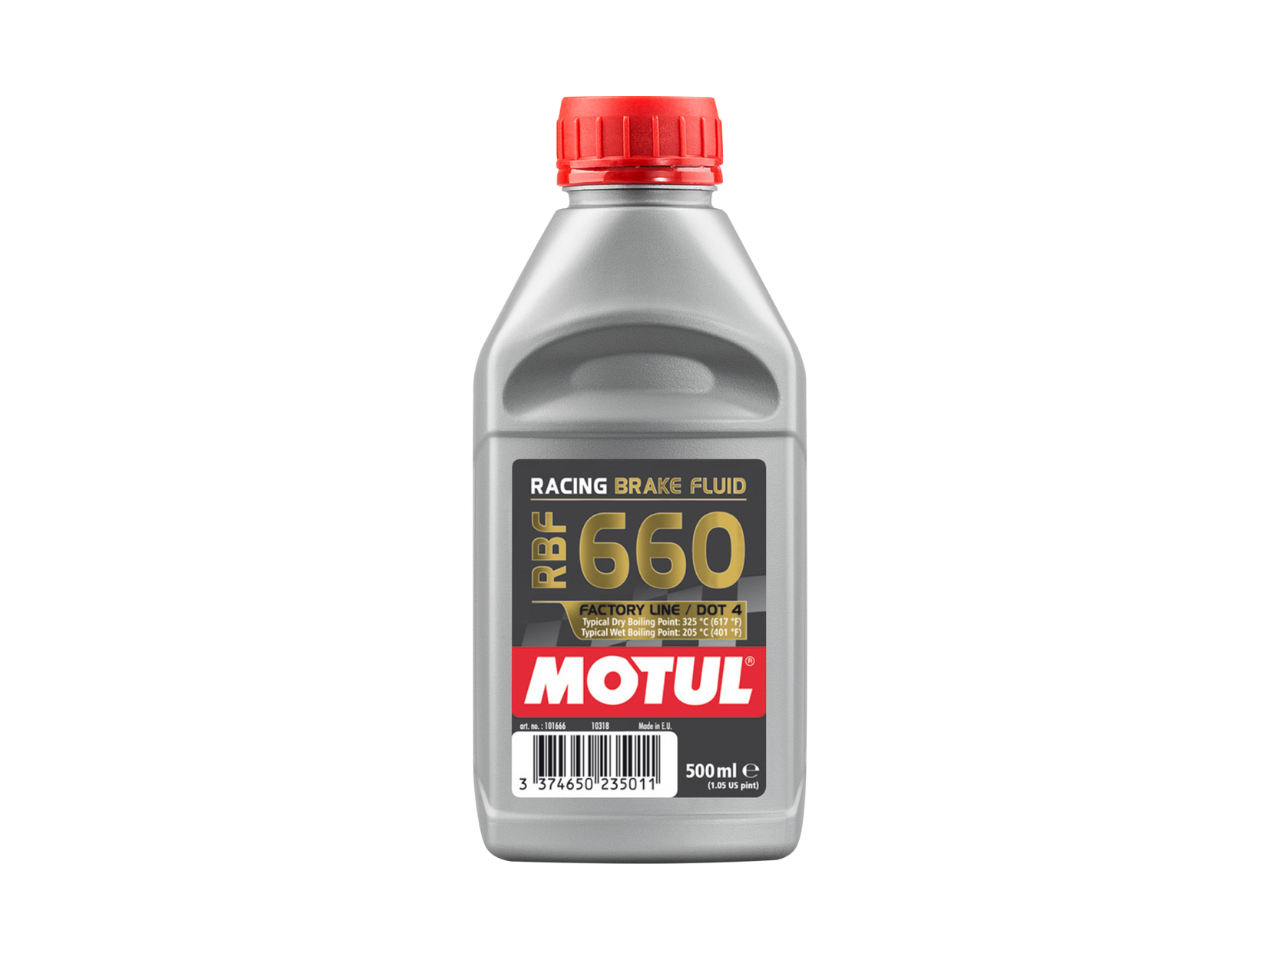 Купить недорого Тормозная жидкость Motul RBF 660 Factory Line в Москве